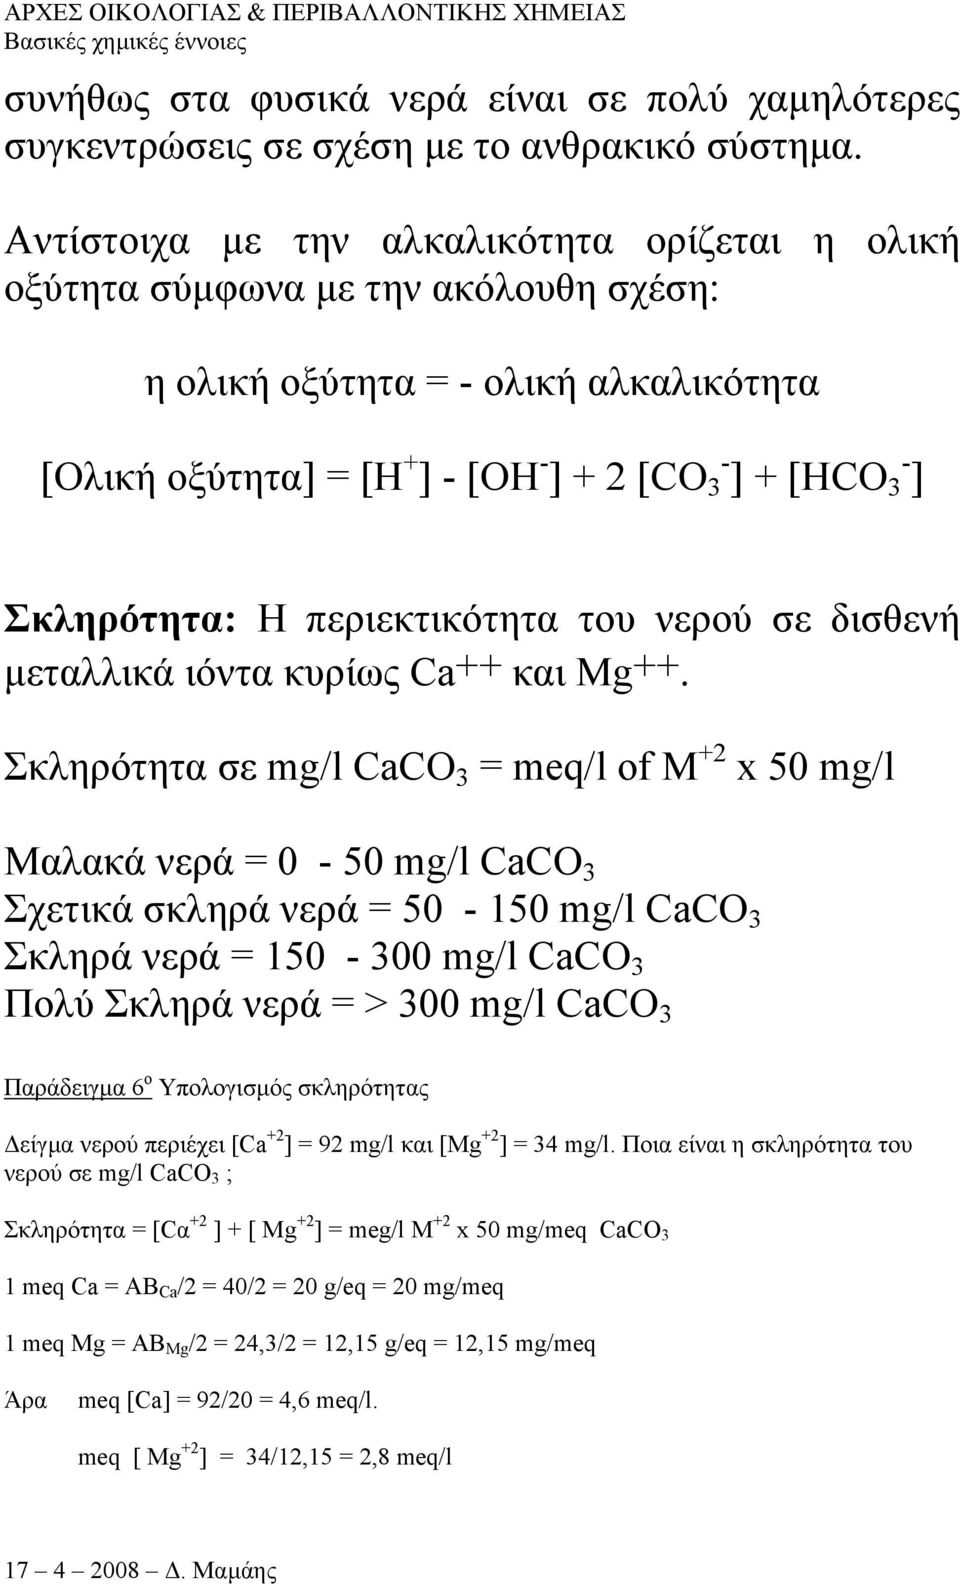 Η περιεκτικότητα του νερού σε δισθενή µεταλλικά ιόντα κυρίως Ca++ και Mg++.